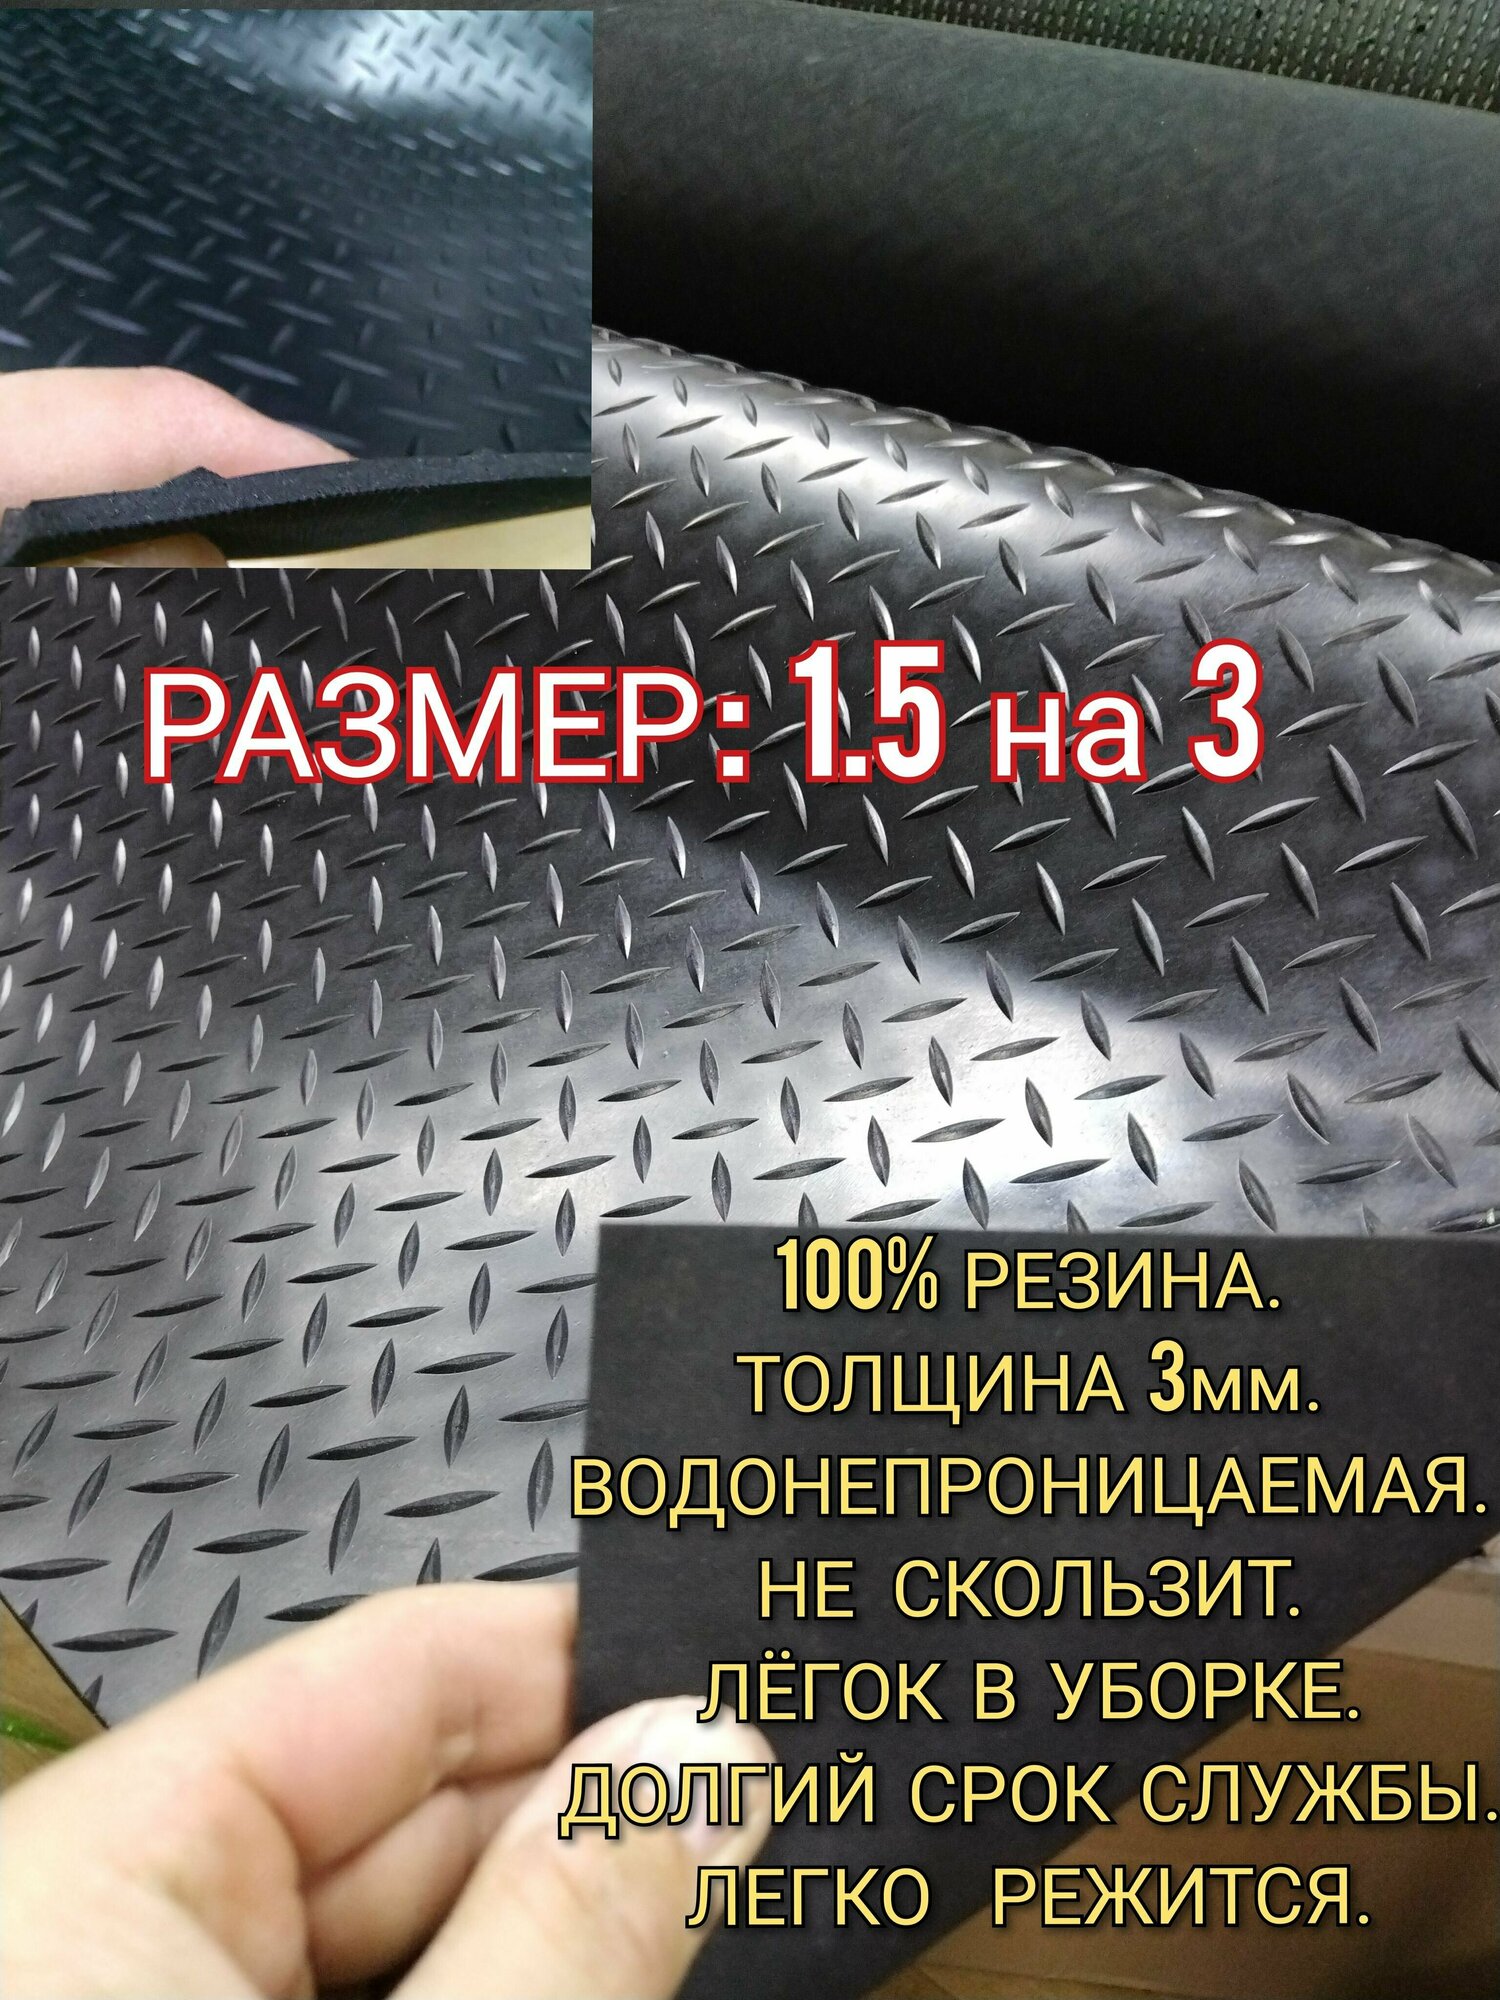 Резиновое покрытие напольное в рулоне 1,5 х 3 (Елочка, цвет черный) Резиновая дорожка для авто, гаража, ступень